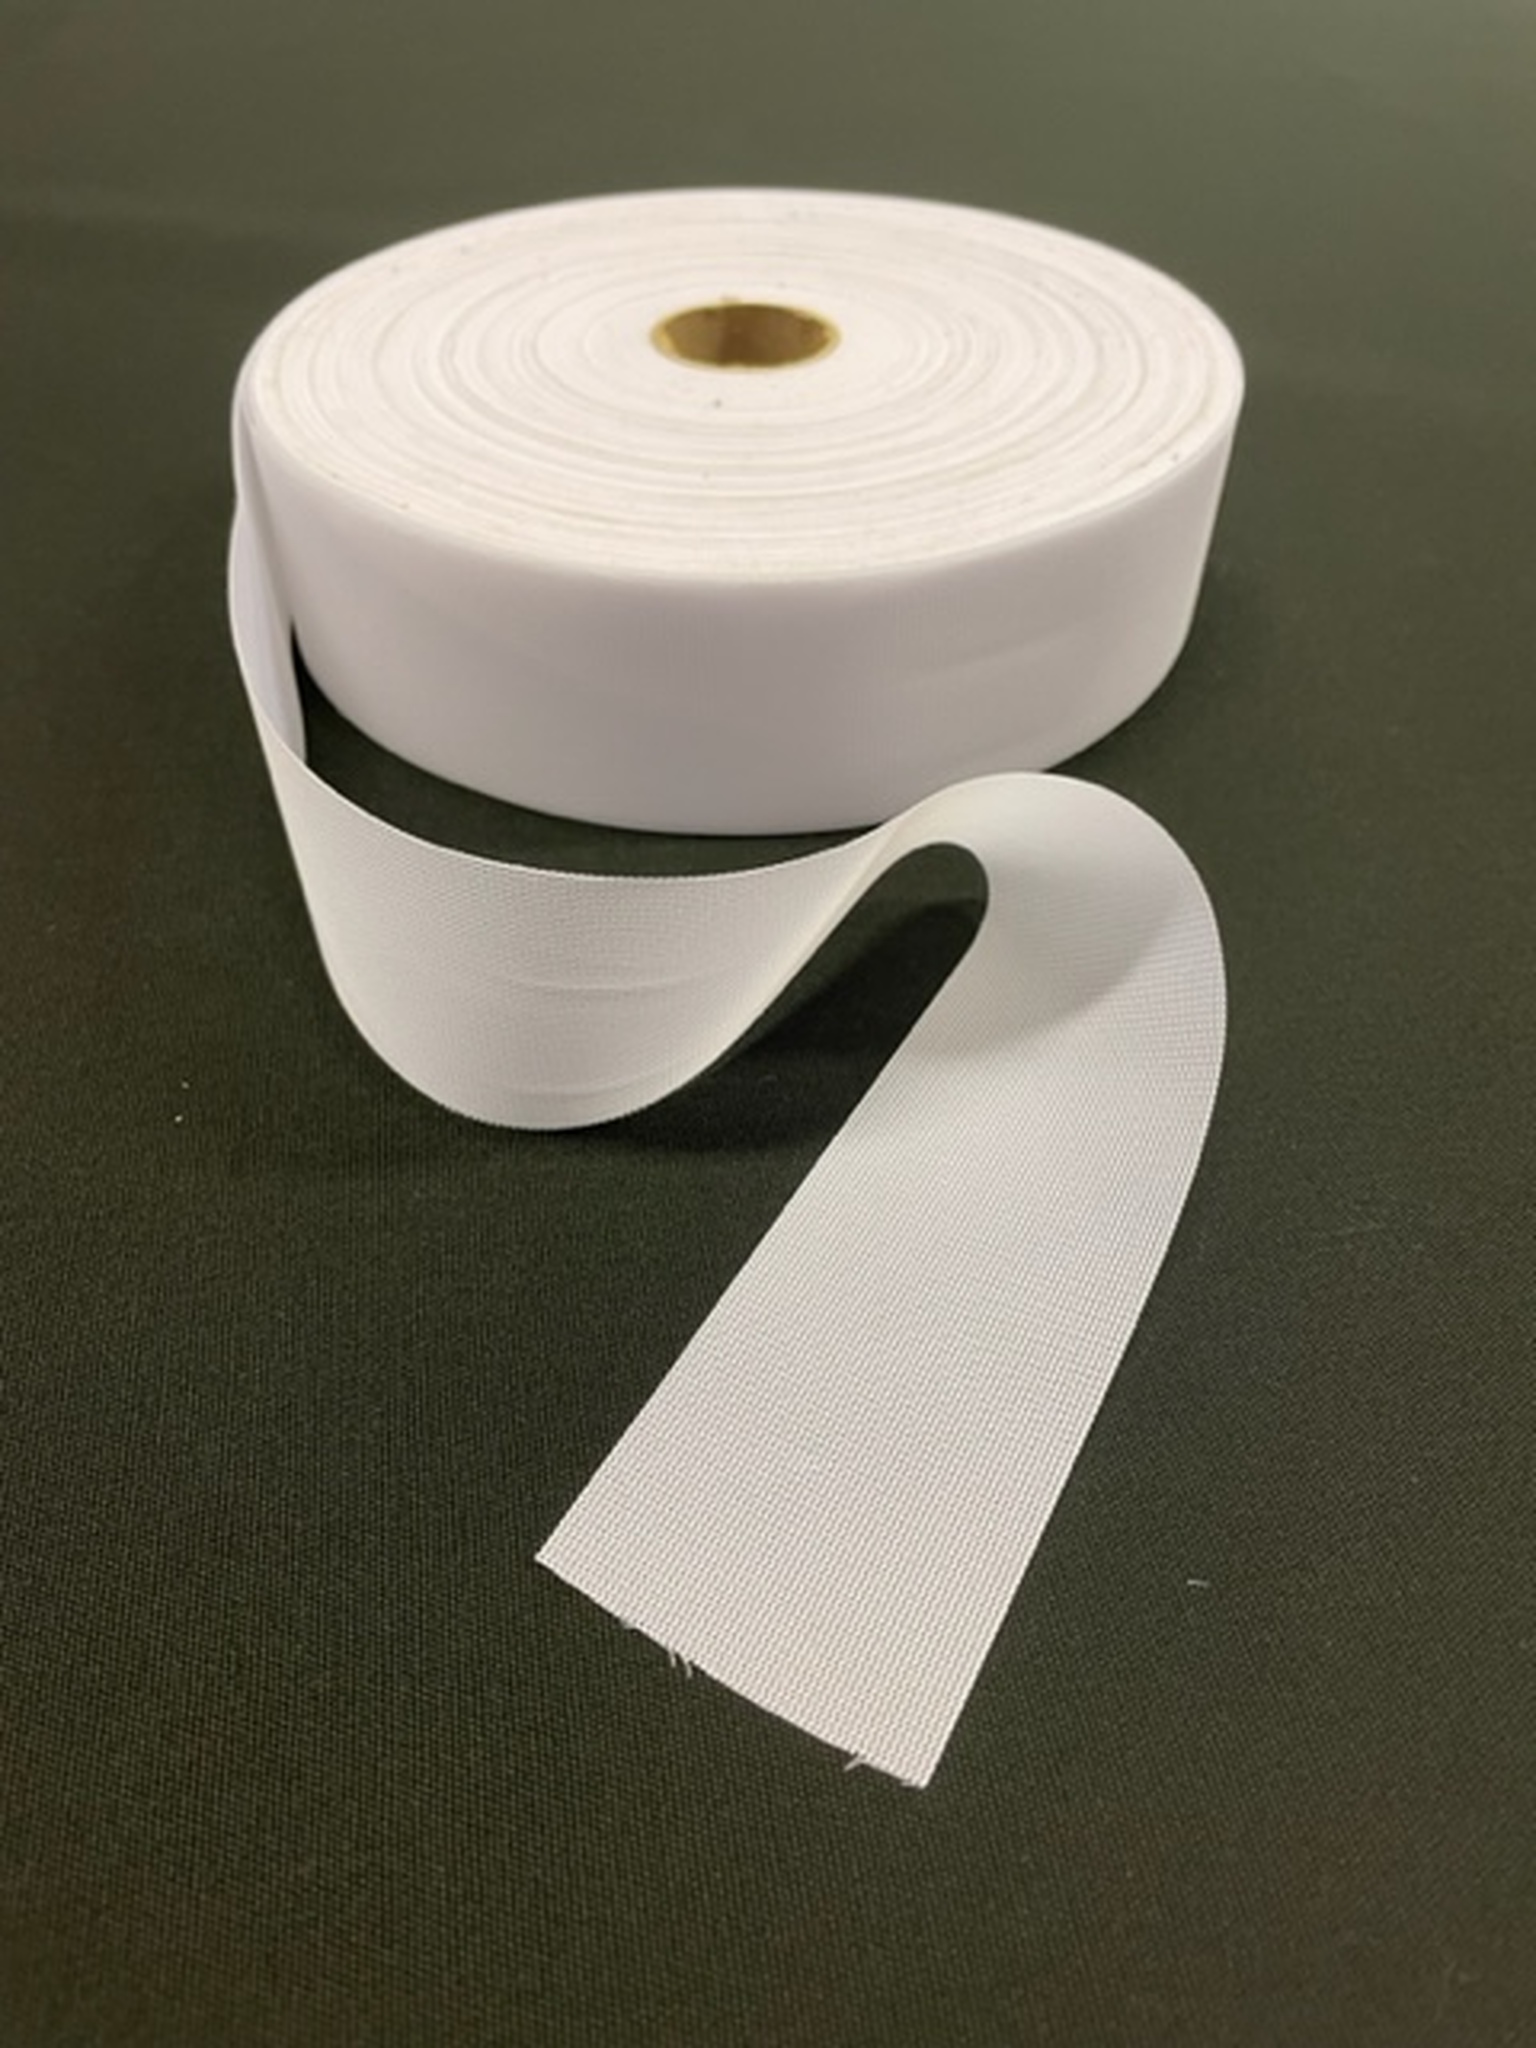 Kanalband i vitt till gardinupphängningar i polyester i bredd 5 cm